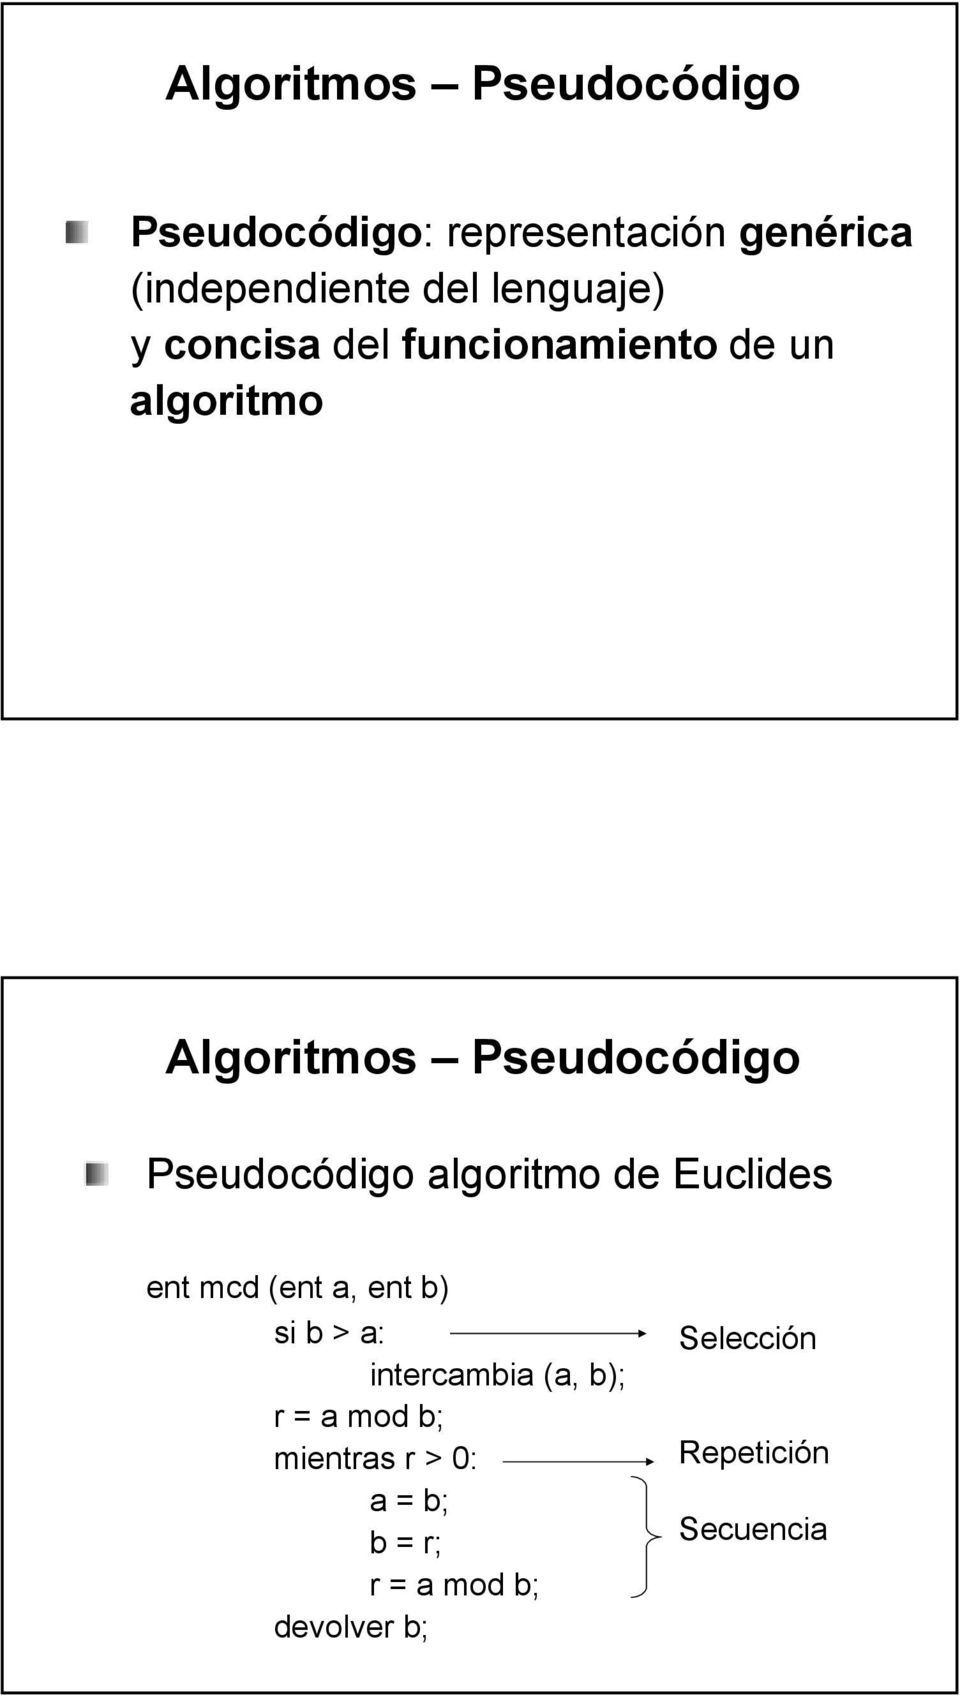 Pseudocódigo algoritmo de Euclides ent mcd (ent a, ent b) si b > a: intercambia (a,